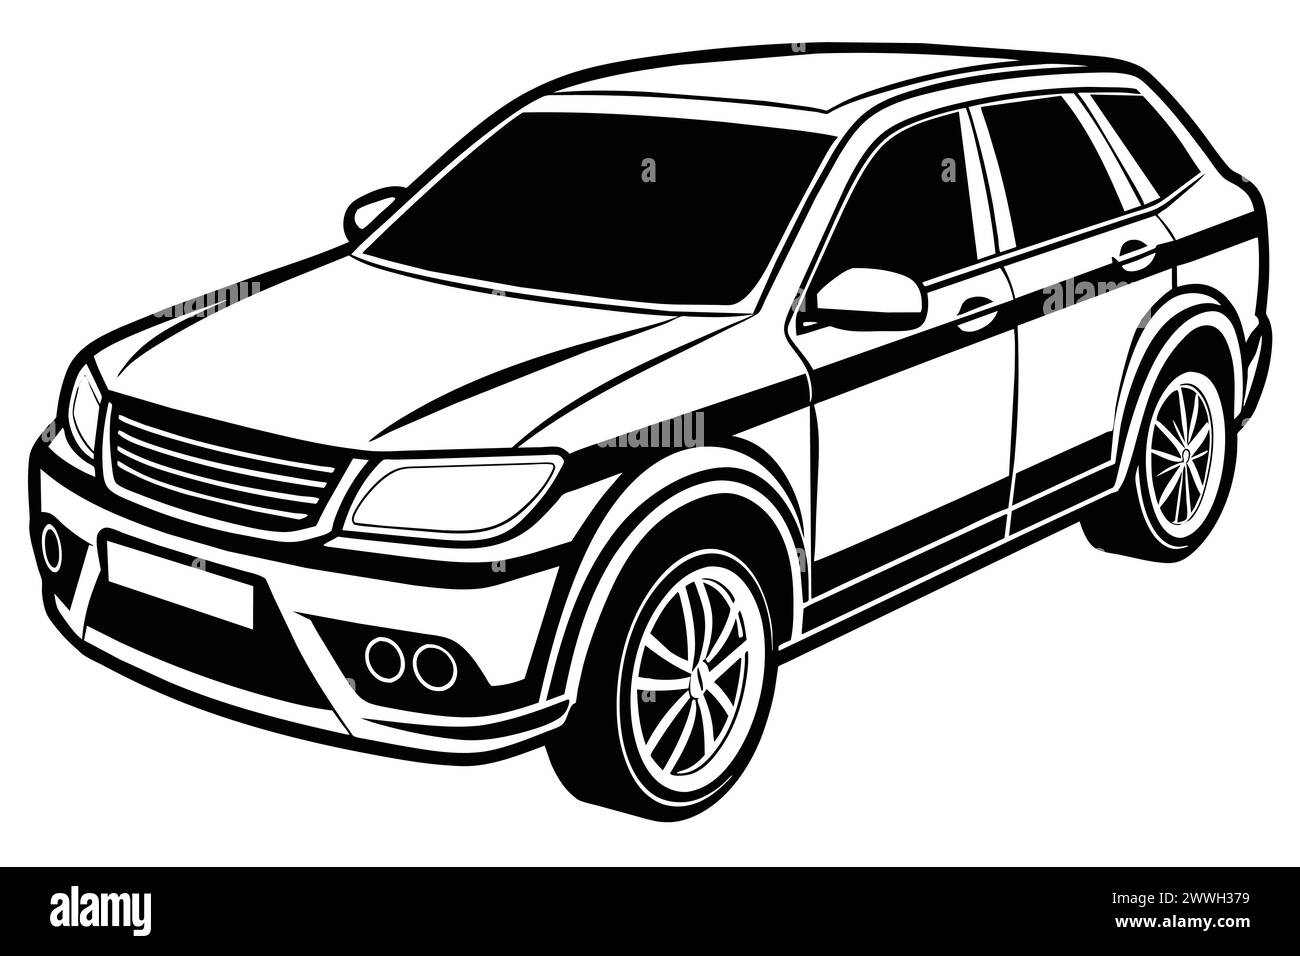 Crossover-Auto, isoliert auf weißem Hintergrund Vektor-Illustration. Stock Vektor